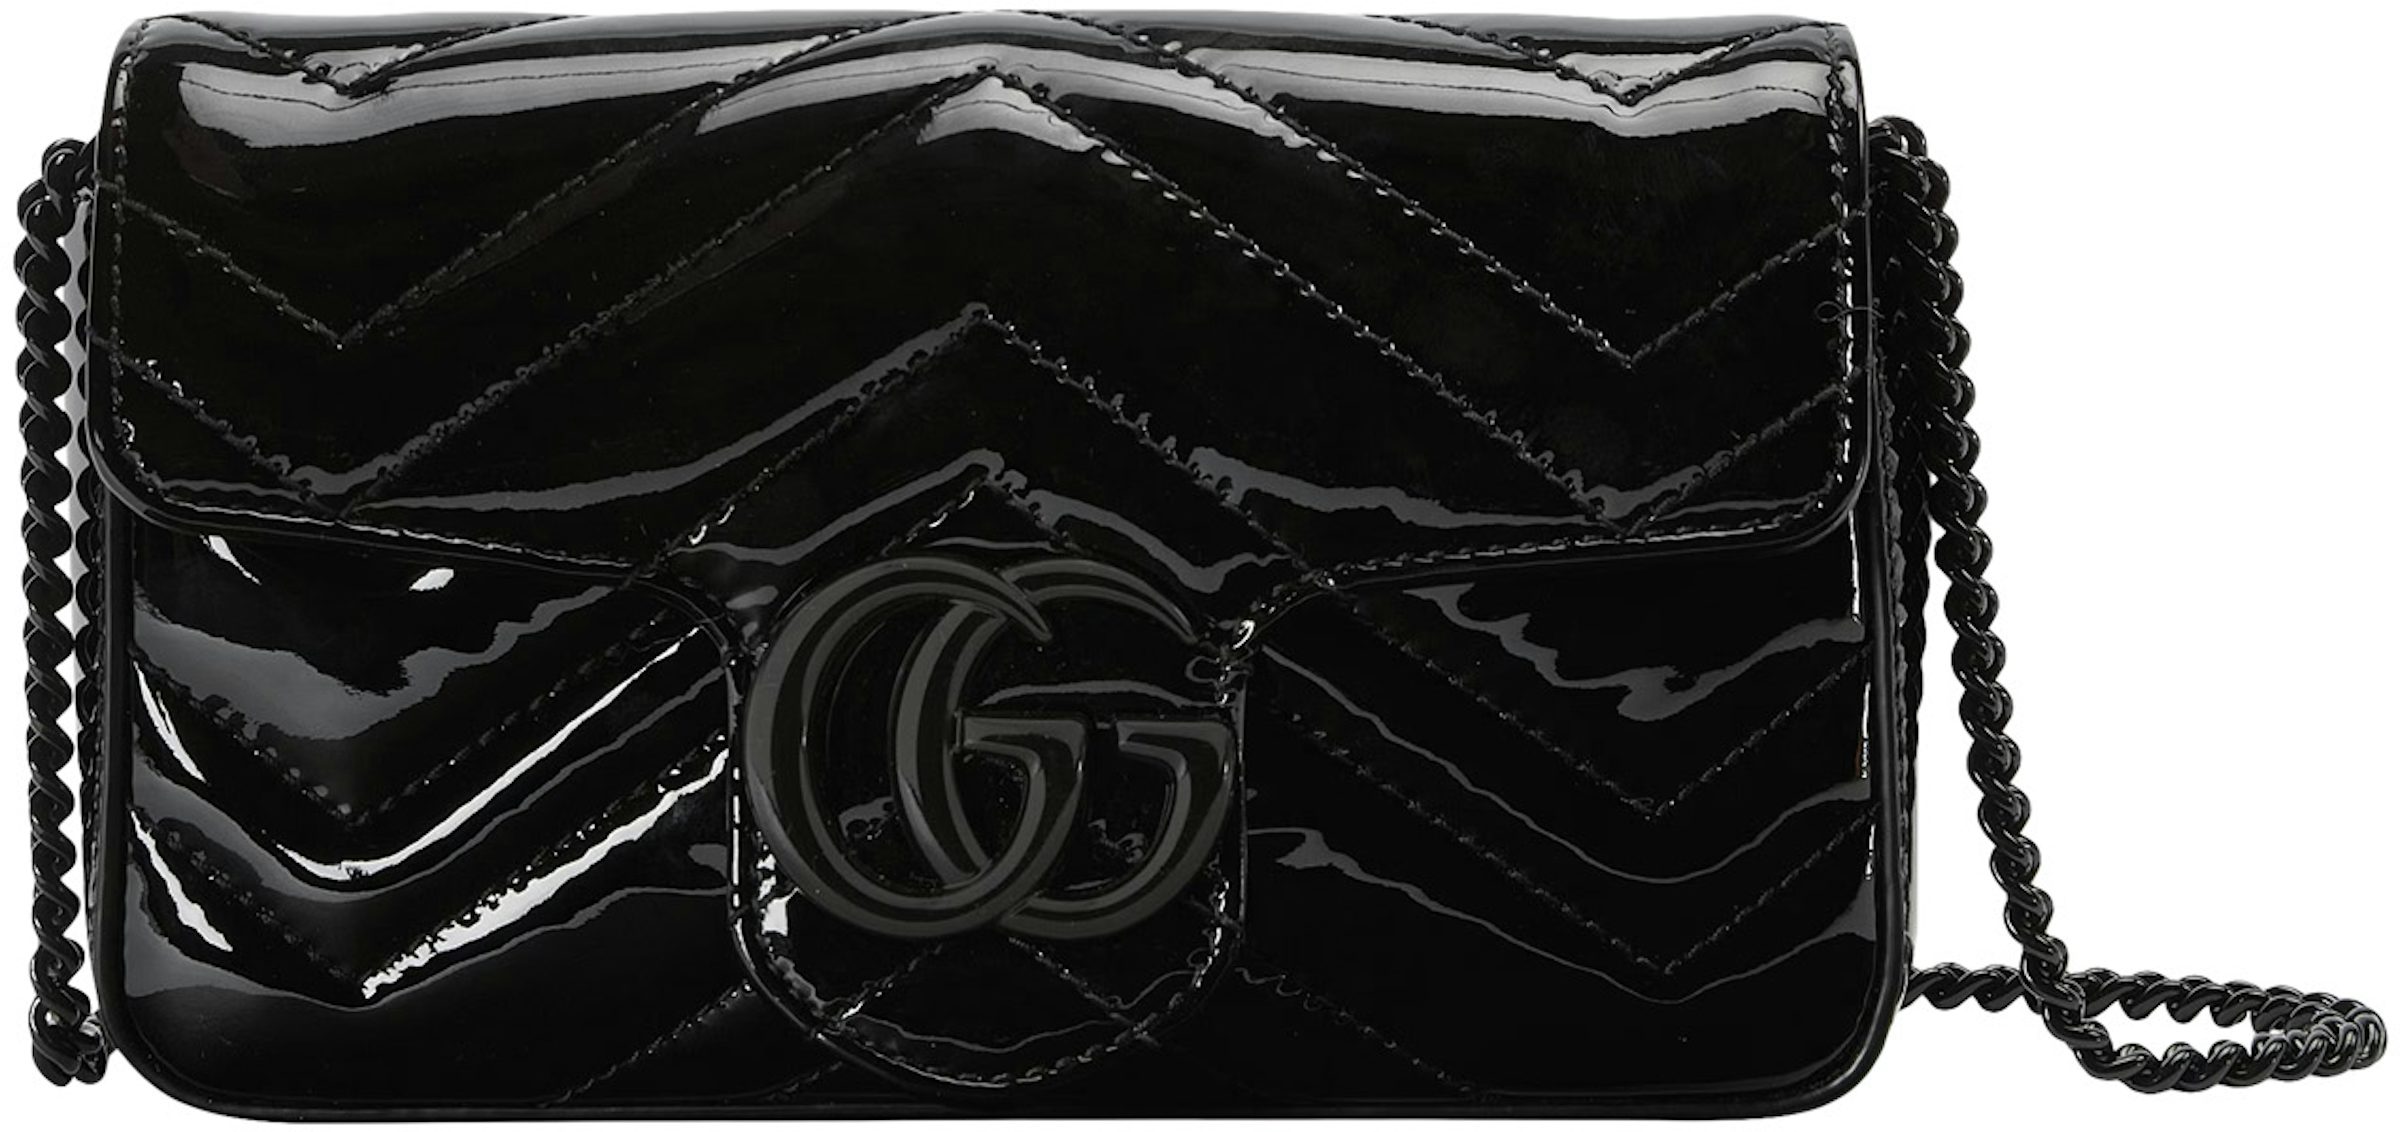 GG Marmont matelassé leather super mini bag in white chevron leather